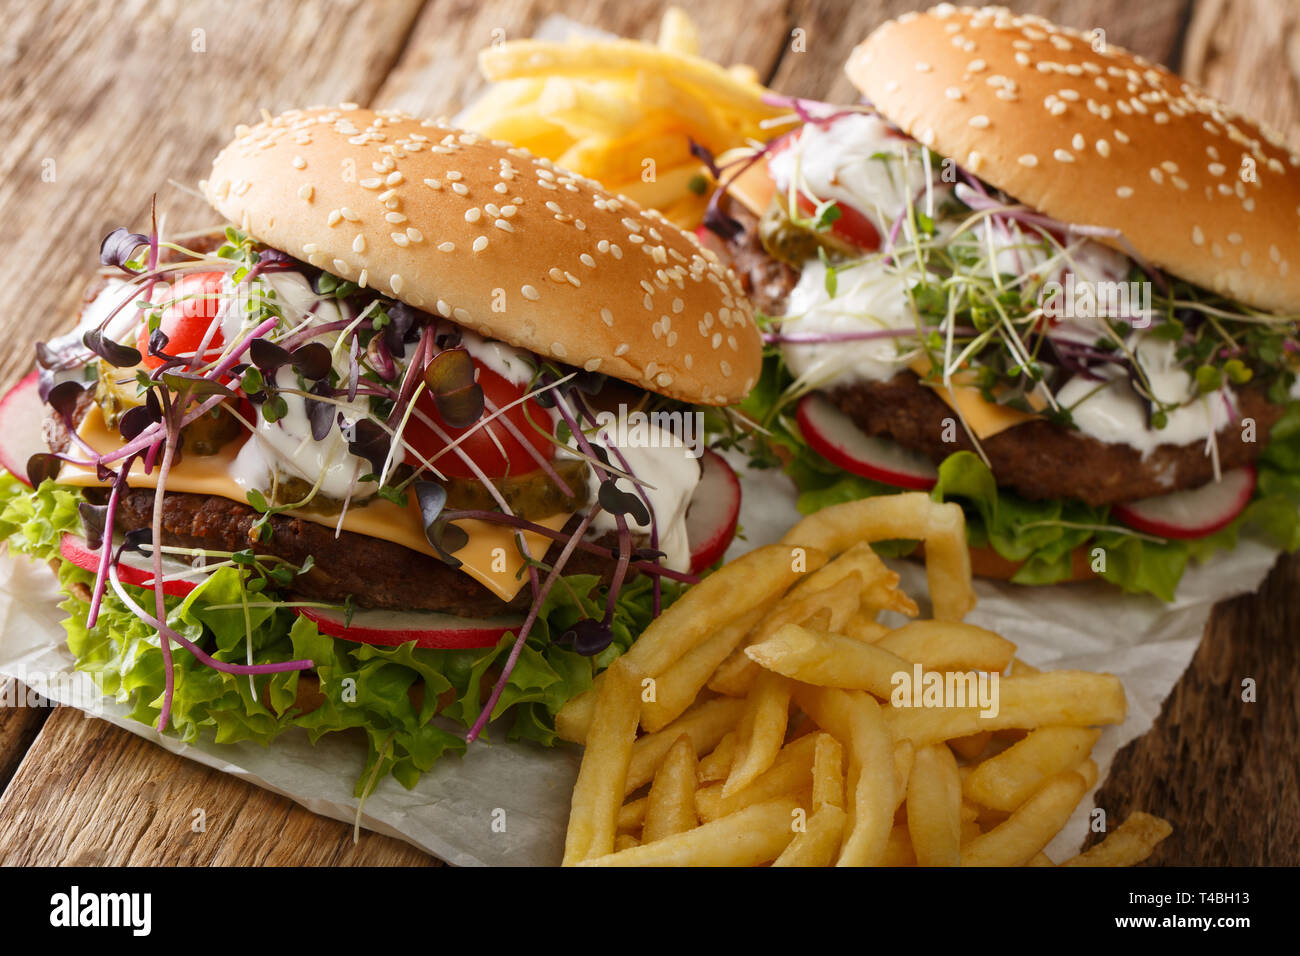 Des sandwichs hamburgers de légumes frais, microgreen, fromage cheddar et de yaourts servis avec frites close-up sur la table horizontale. Banque D'Images